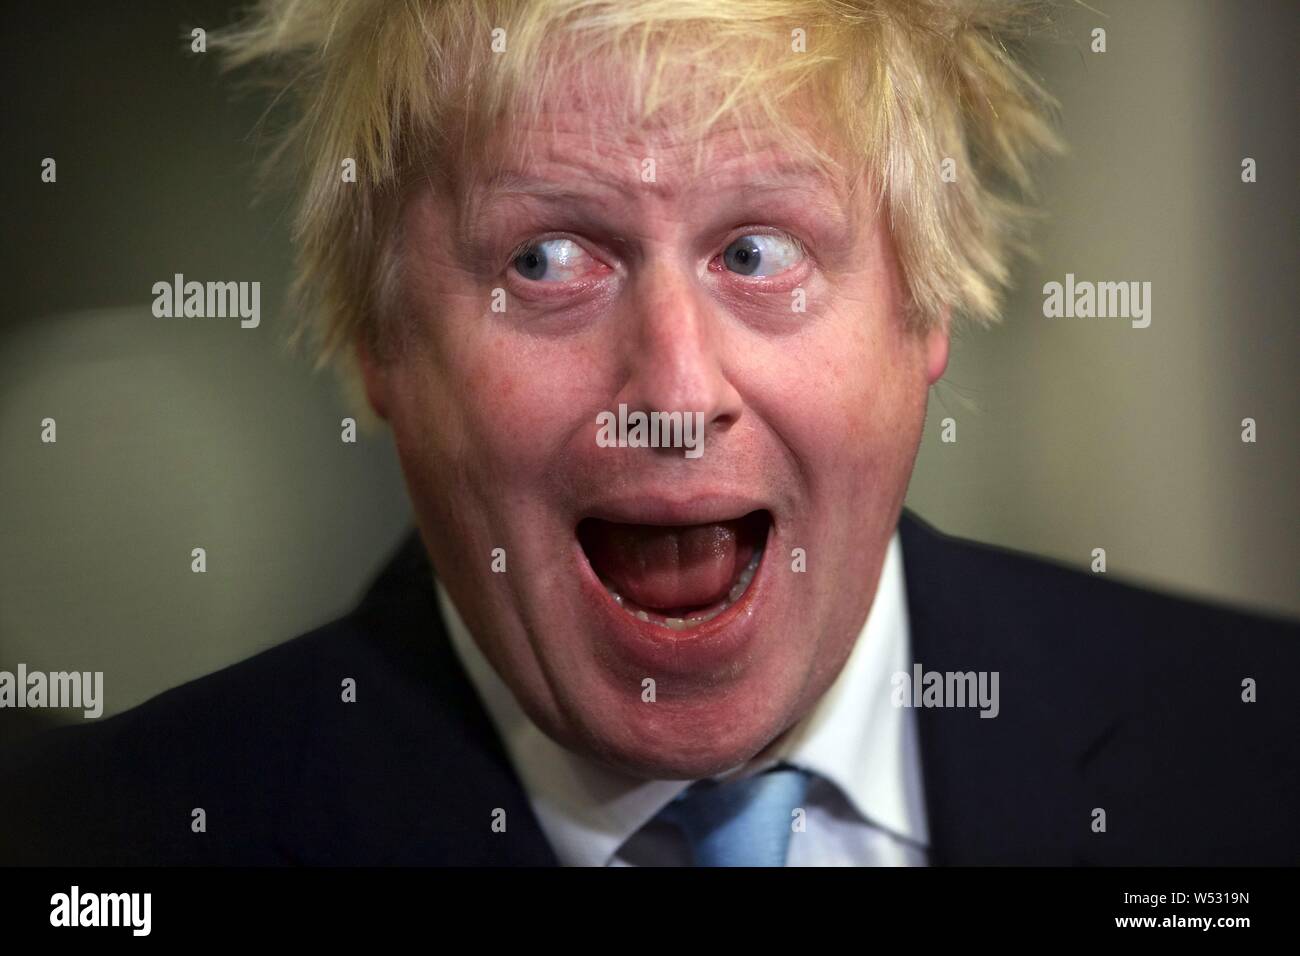 UXBRIDGE, ENGLAND - Mai 07: Boris Johnson der Bürgermeister von London in die Zählung für Uxbridge und Ruislip, wo er die M.P. für die West London Wahlkreis. Am 8. Mai 2015, England. an der Brunel University in London während der Uxbridge und South Ruislip zählen am 8. Mai 2015 in Uxbridge, England. Das Vereinigte Königreich hat zu den Urnen gegangen für eine neue Regierung in einem der am stärksten umkämpften allgemeine Wahlen in der jüngsten Geschichte zu stimmen. Stockfoto